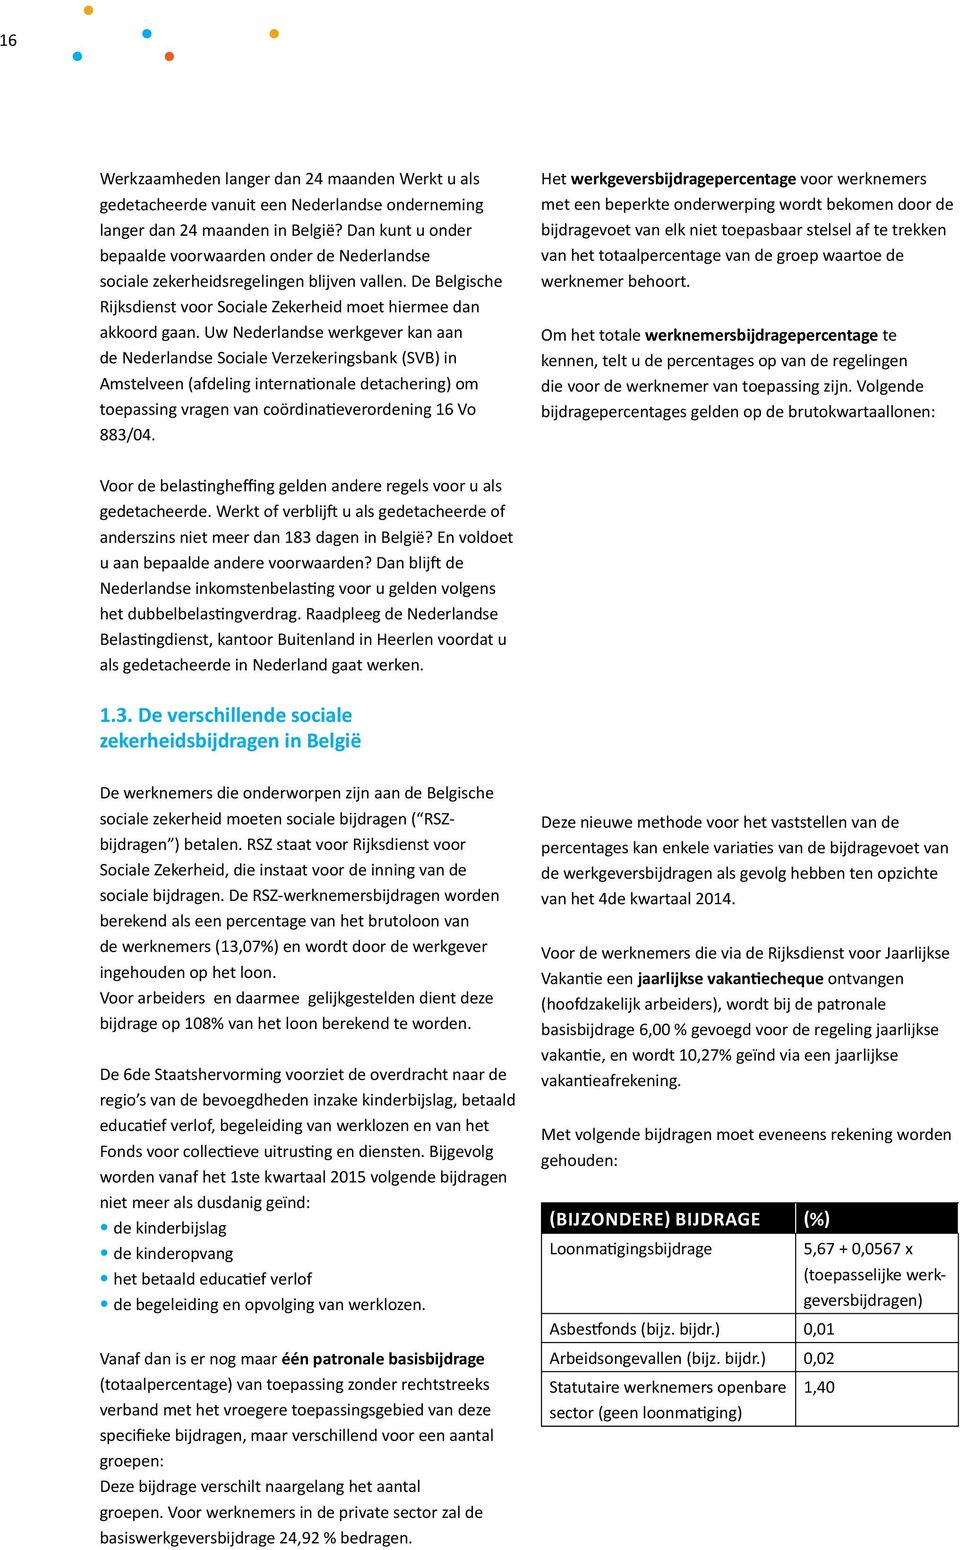 Uw Nederlandse werkgever kan aan de Nederlandse Sociale Verzekeringsbank (SVB) in Amstelveen (afdeling internationale detachering) om toepassing vragen van coördinatieverordening 16 Vo 883/04.